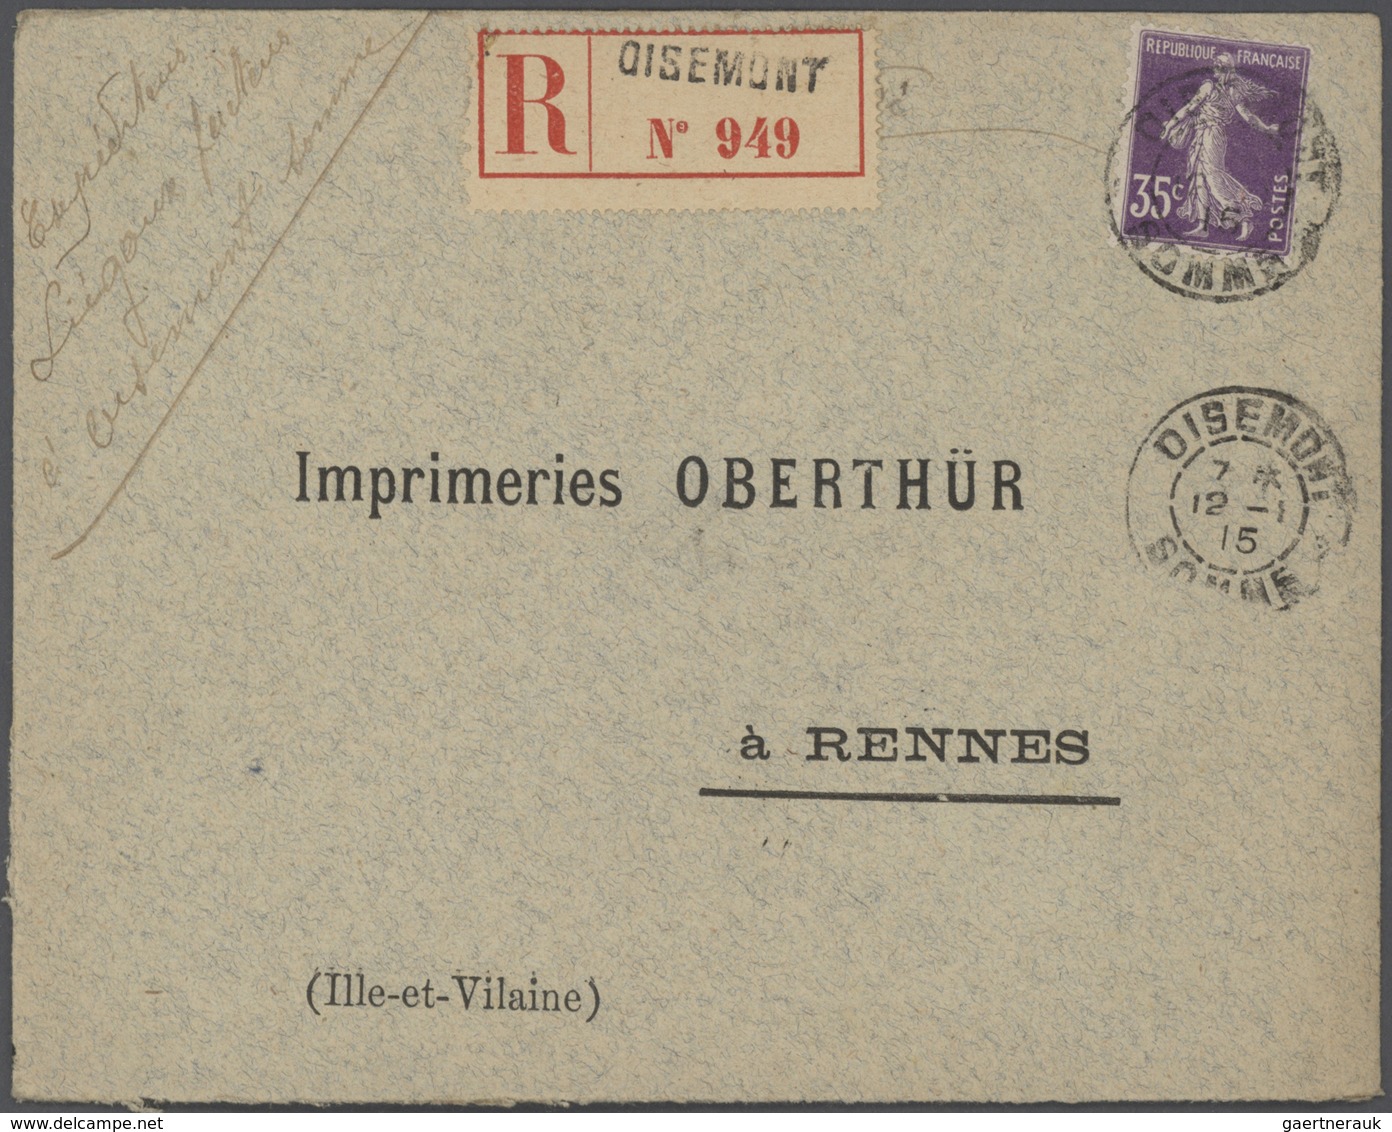 Br Frankreich: 1910/50 (ca.), Sammlung von ca. 335 Einschreibe-Briefen, sehr spezialisiert mit vielen T